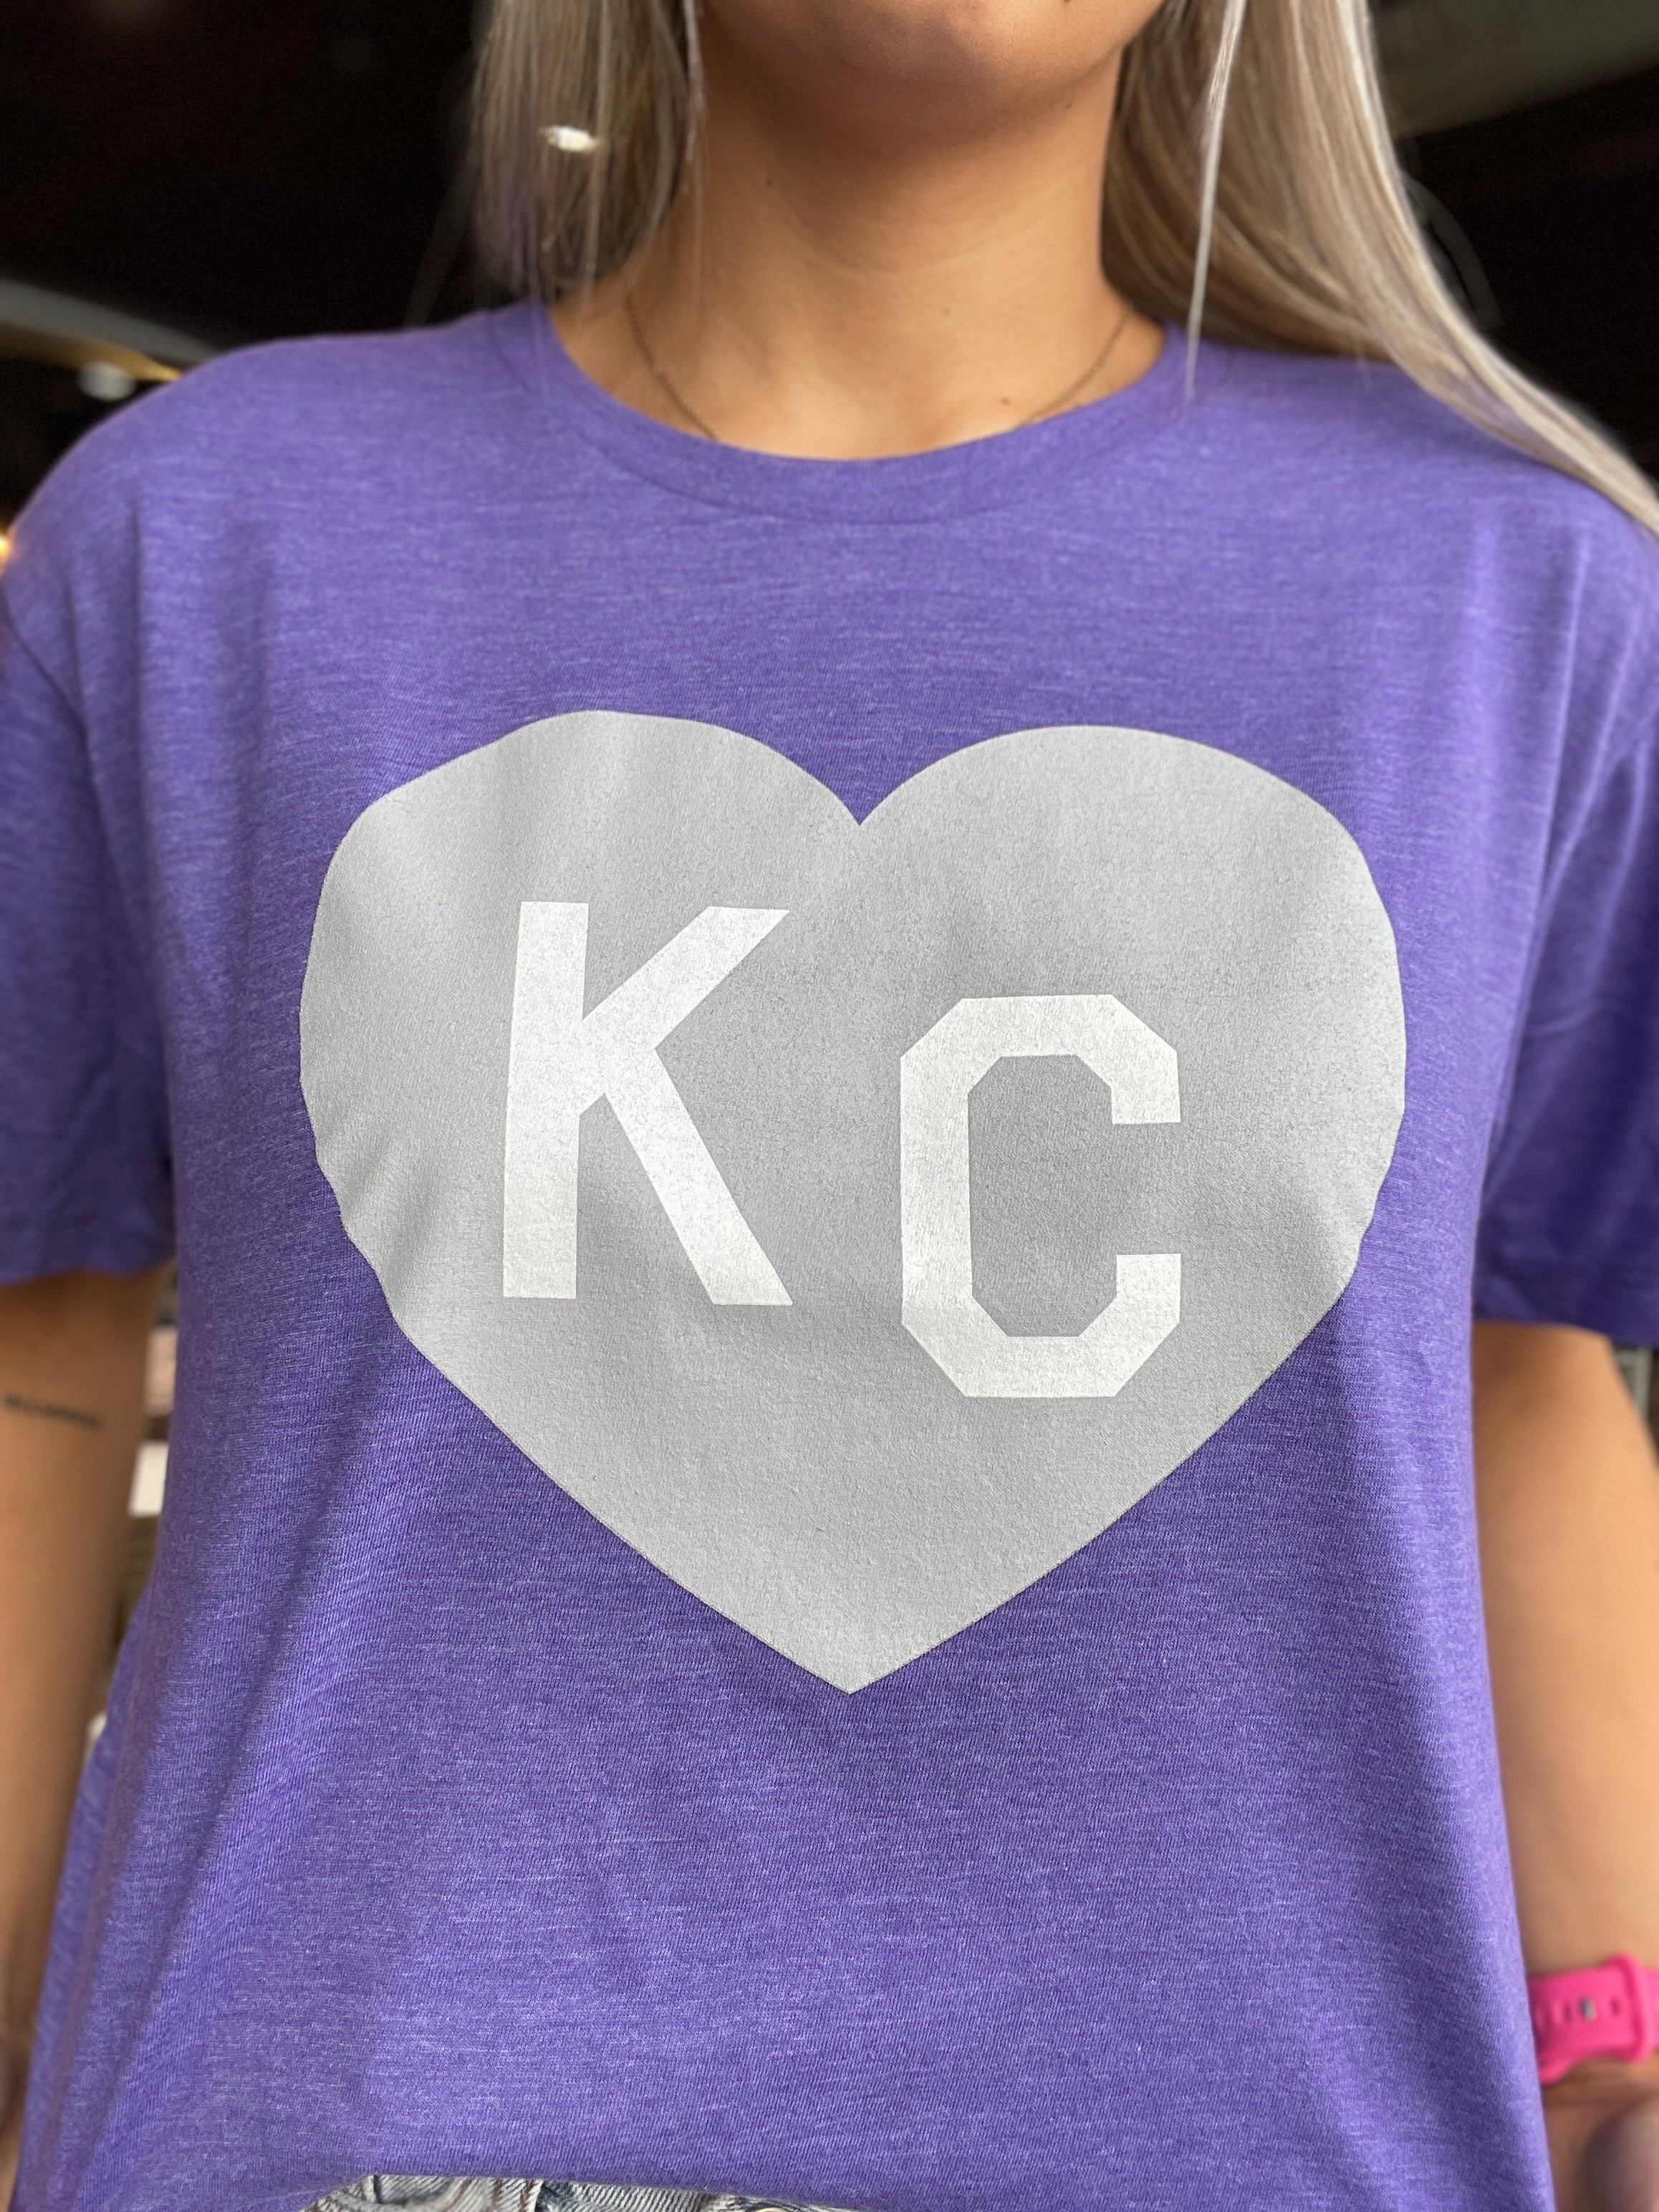 Lavender & Pink KC Heart Vintage T-Shirt